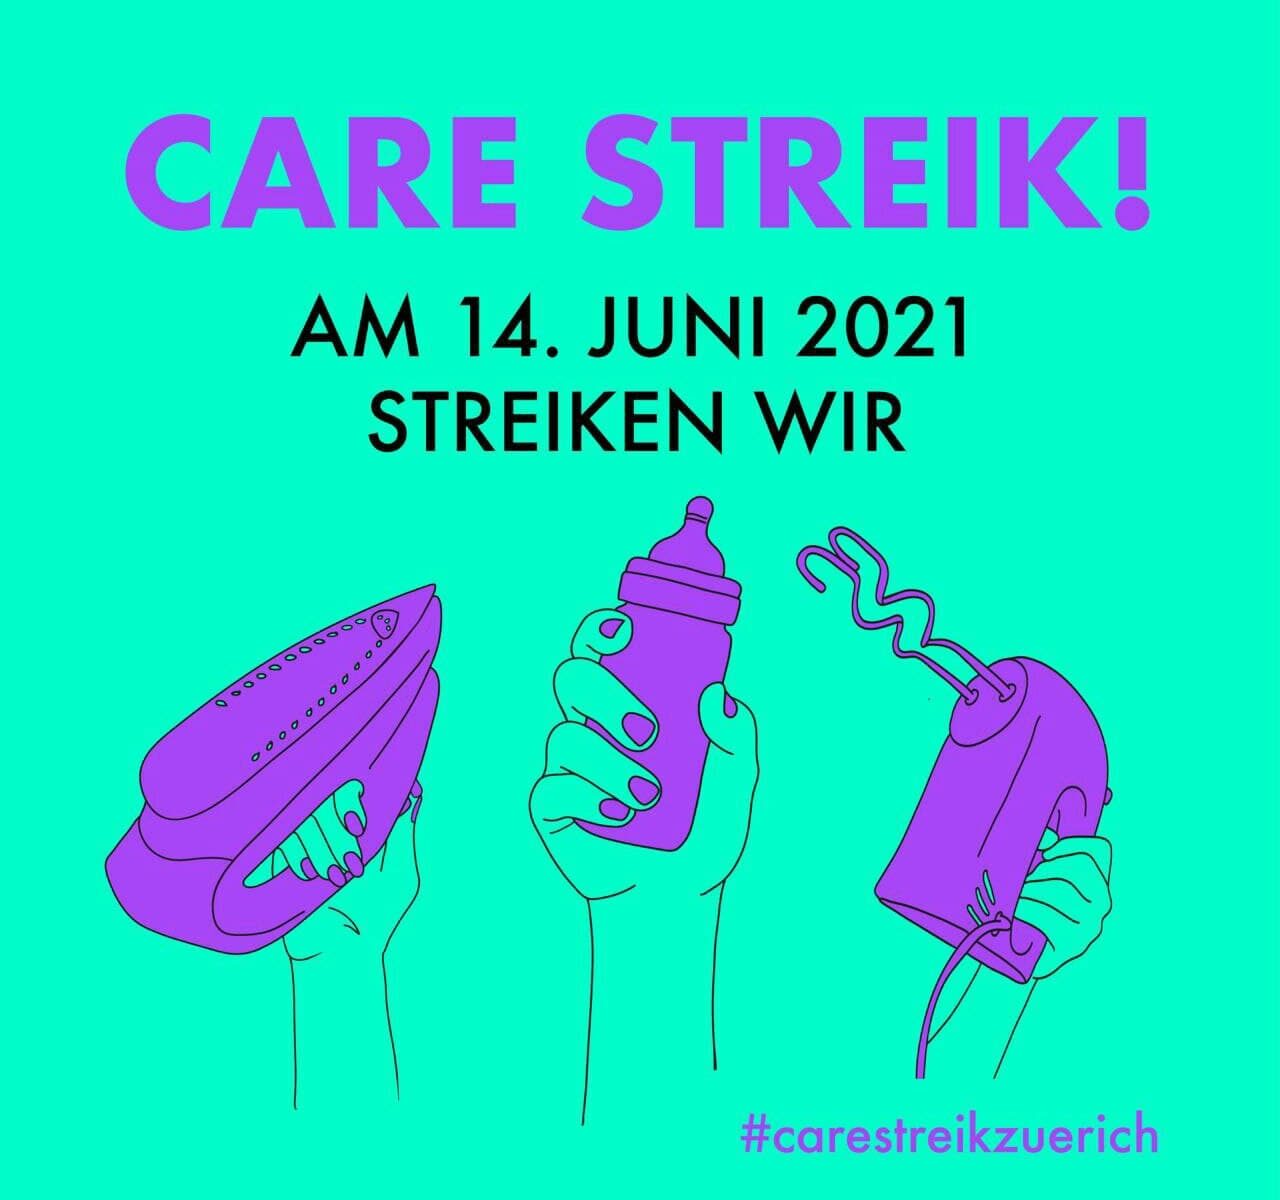 Grüner Hintergrund mit violetter Schrift: "Care Streik! Am 14. Juni 2021 streiken wir". Darunter drei Hände, die jeweils ein Bügeleisen, eine Babyflasche und einen Handmixer hochhalten.